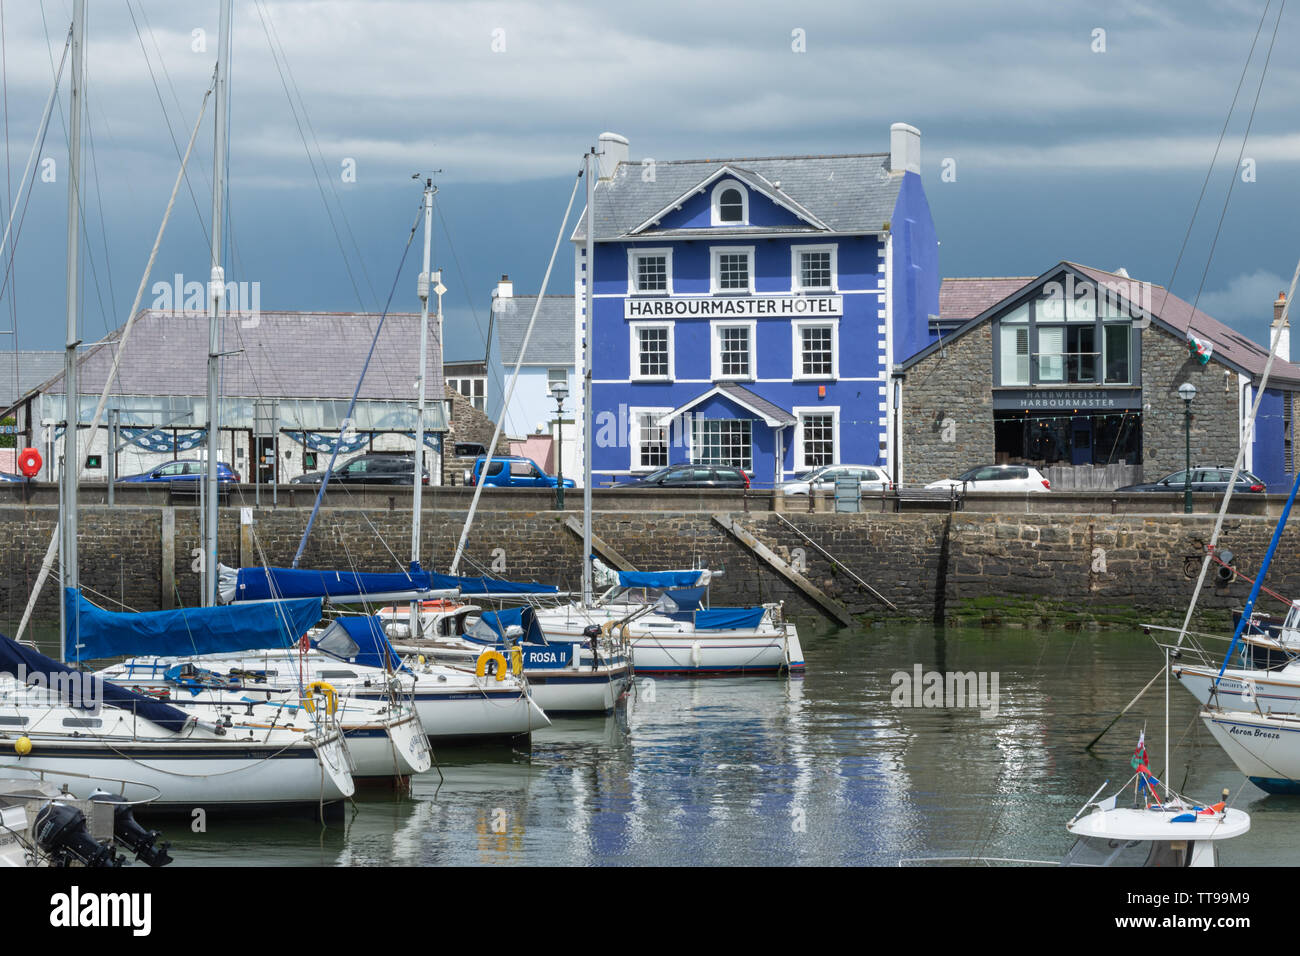 Le port pittoresque et charmante ville de Aberaeron sur la côte de la Baie de Cardigan dans Ceredigion, pays de Galles, Royaume-Uni Banque D'Images